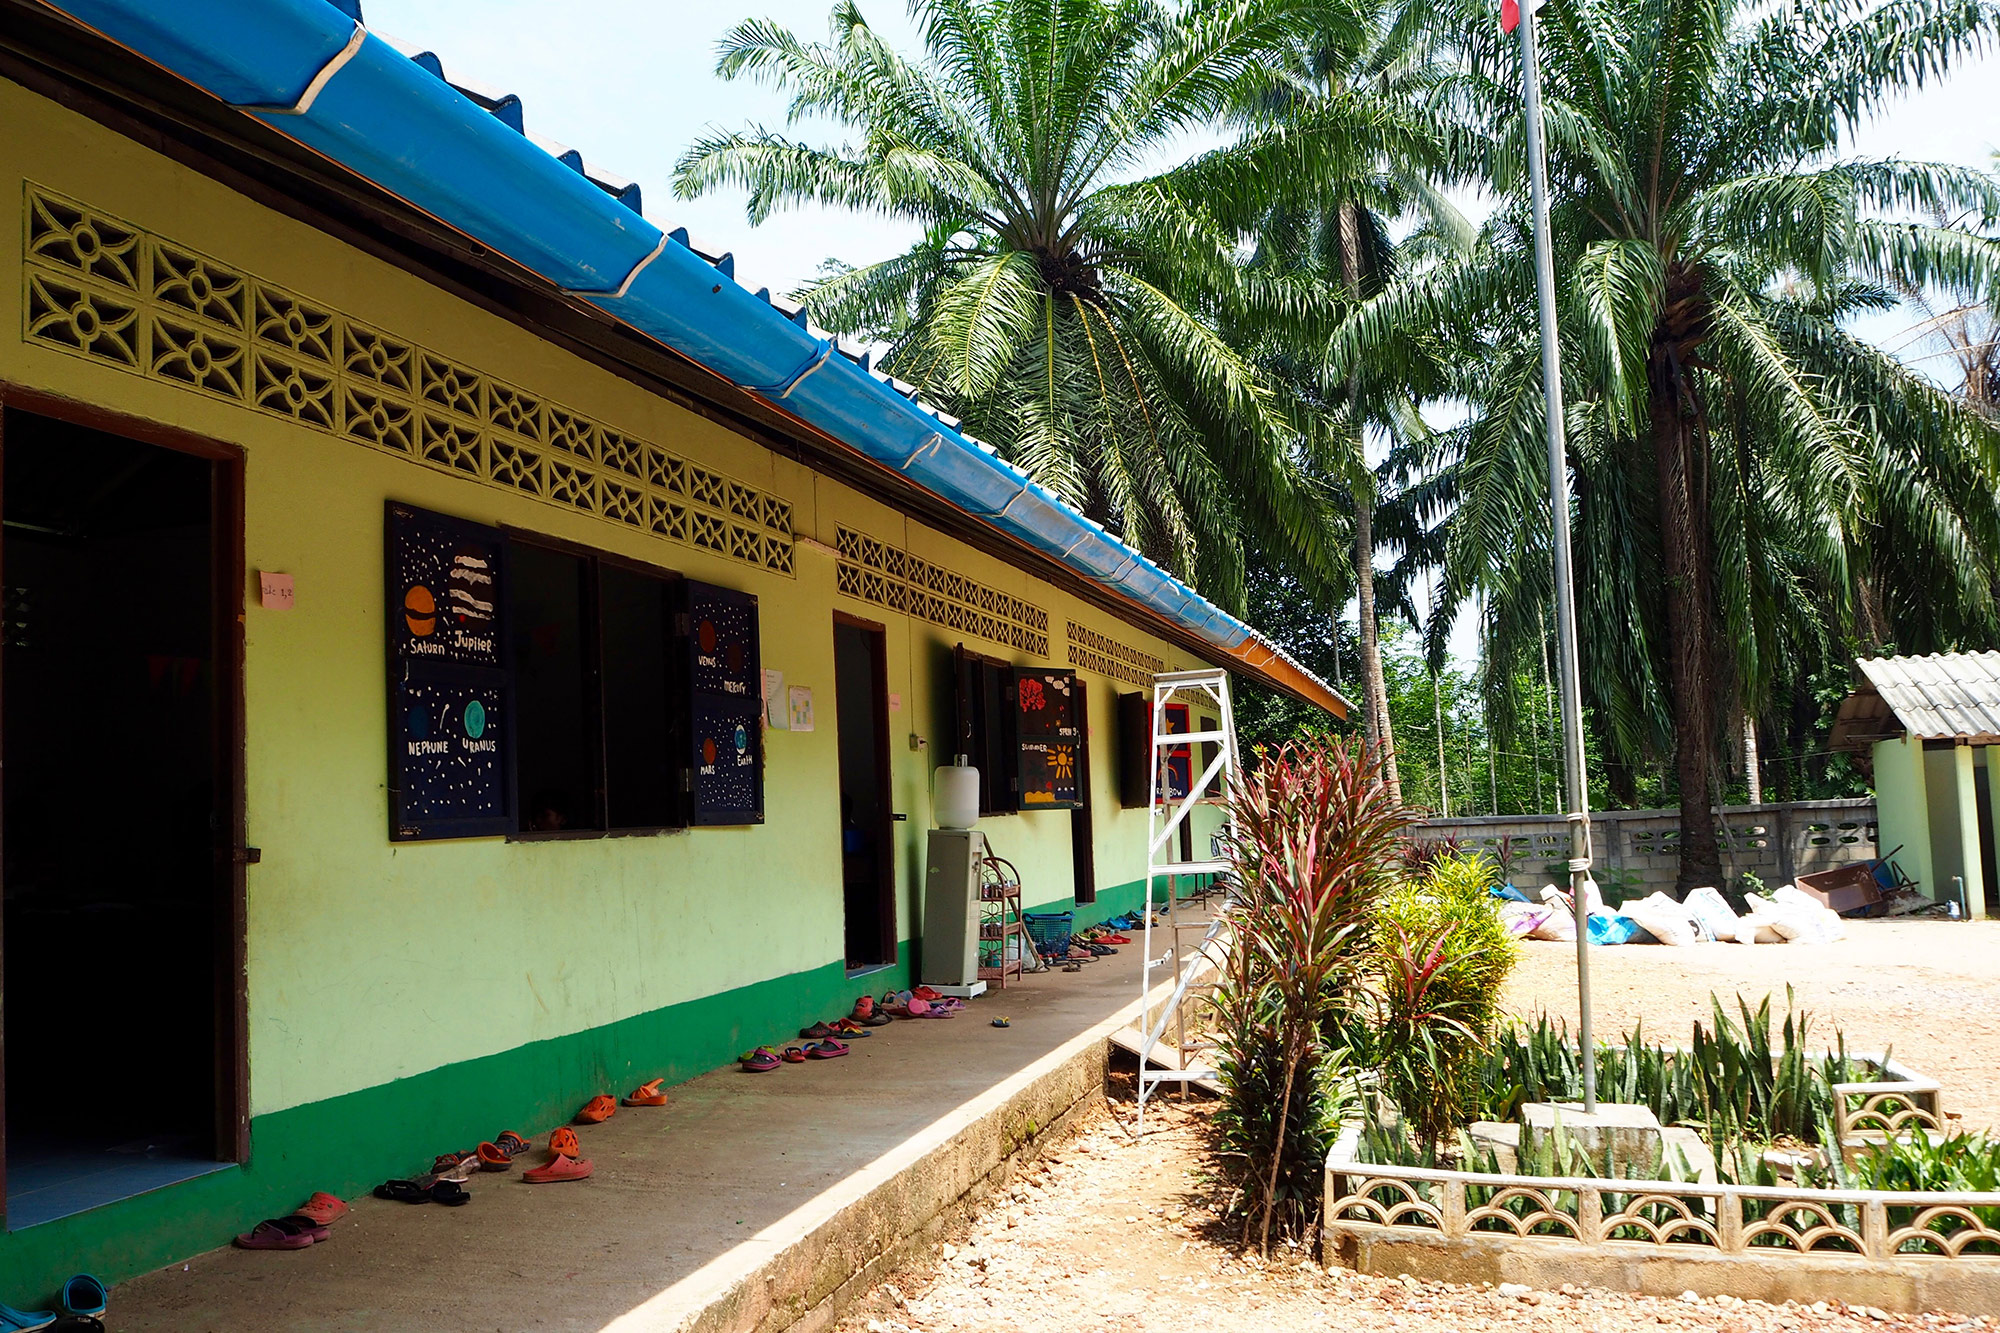 Burmese learning center - rooms